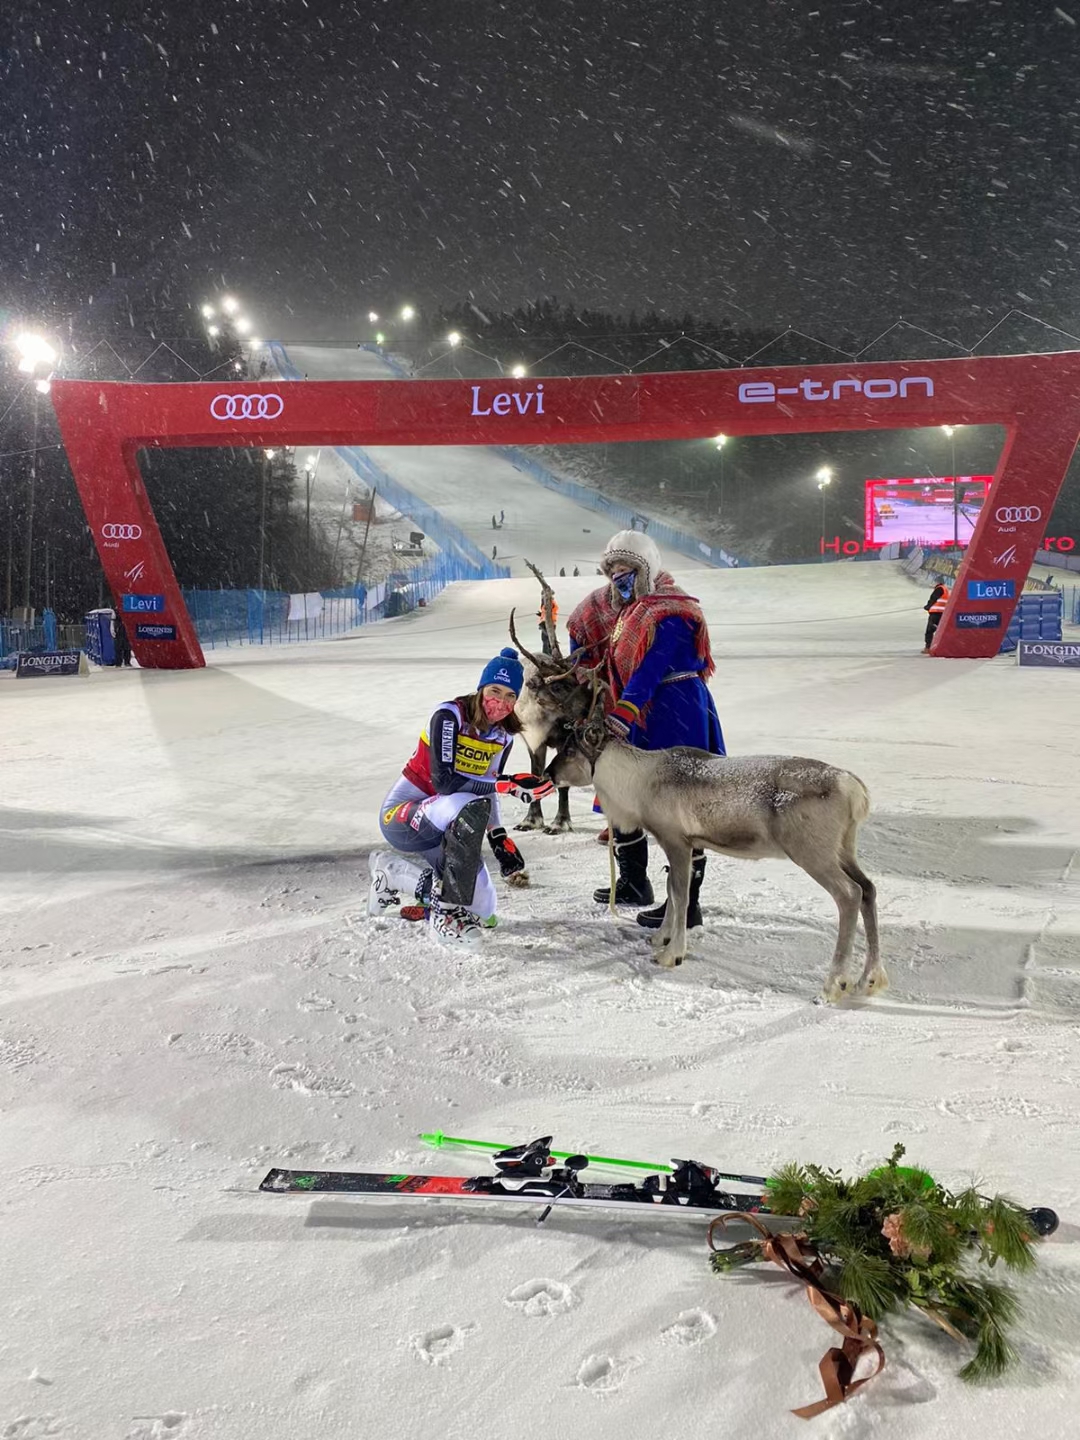 Slovakia's Petra Vlhova wins women's slalom gold at Beijing Olympics